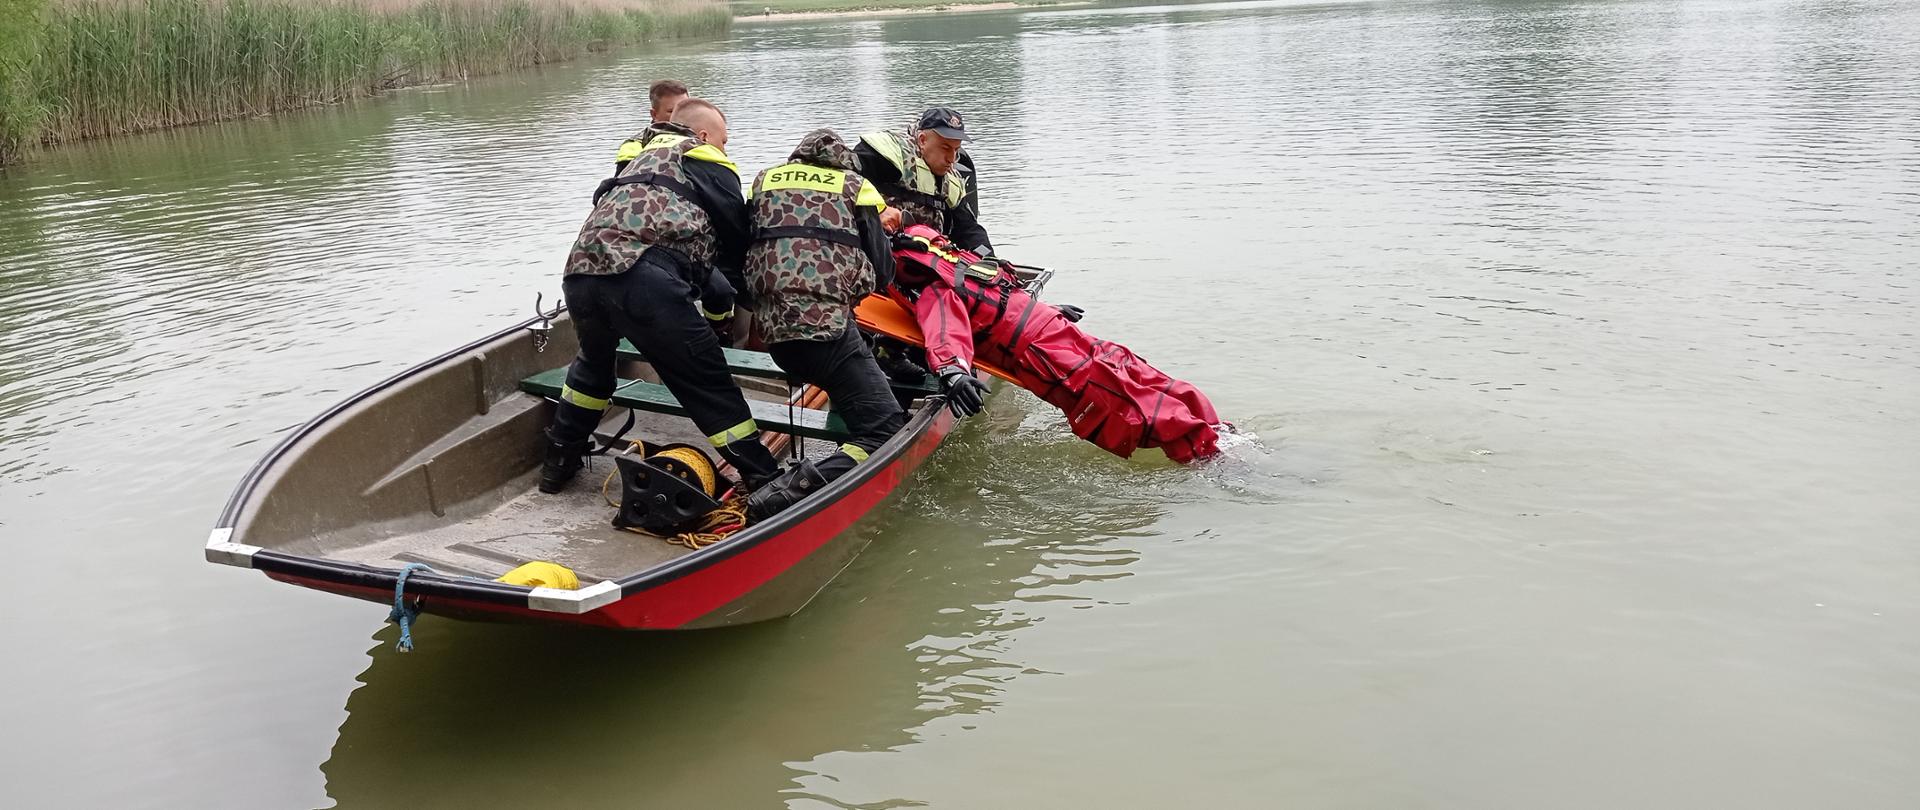 Zdjęcie wykonane z brzegu, na wodzie pływa łódź strażacka. W łodzi jest czterech ratowników, którzy wyciągają z wody strażaka w czerwonym skafandrze. 